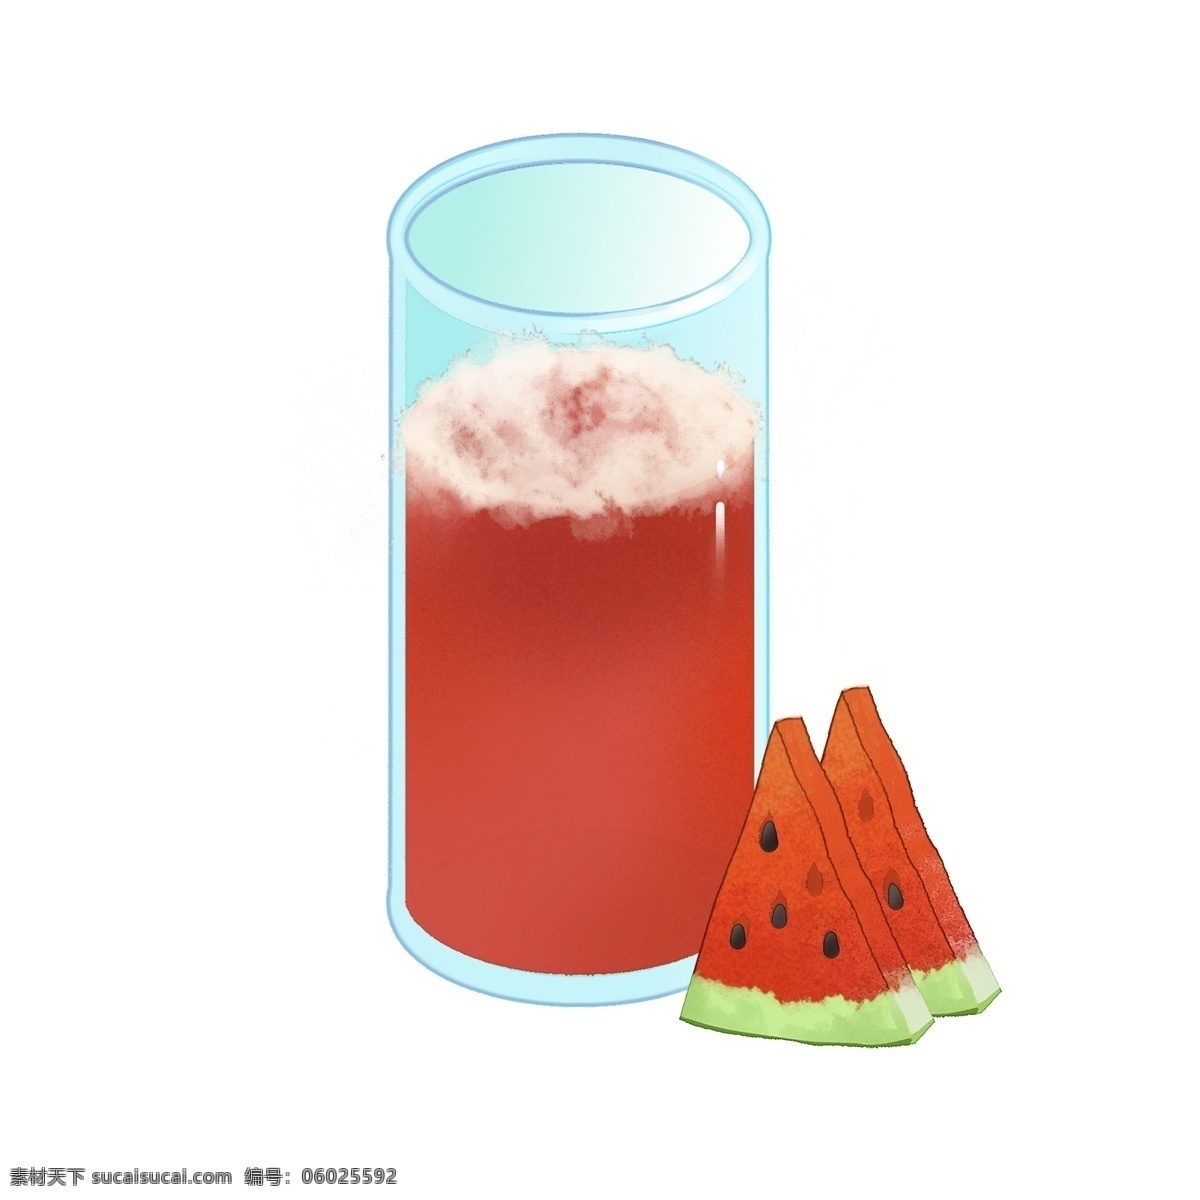 西瓜汁 夏季 水果 饮品 西瓜 果汁 解渴 消暑 饮料 夏天